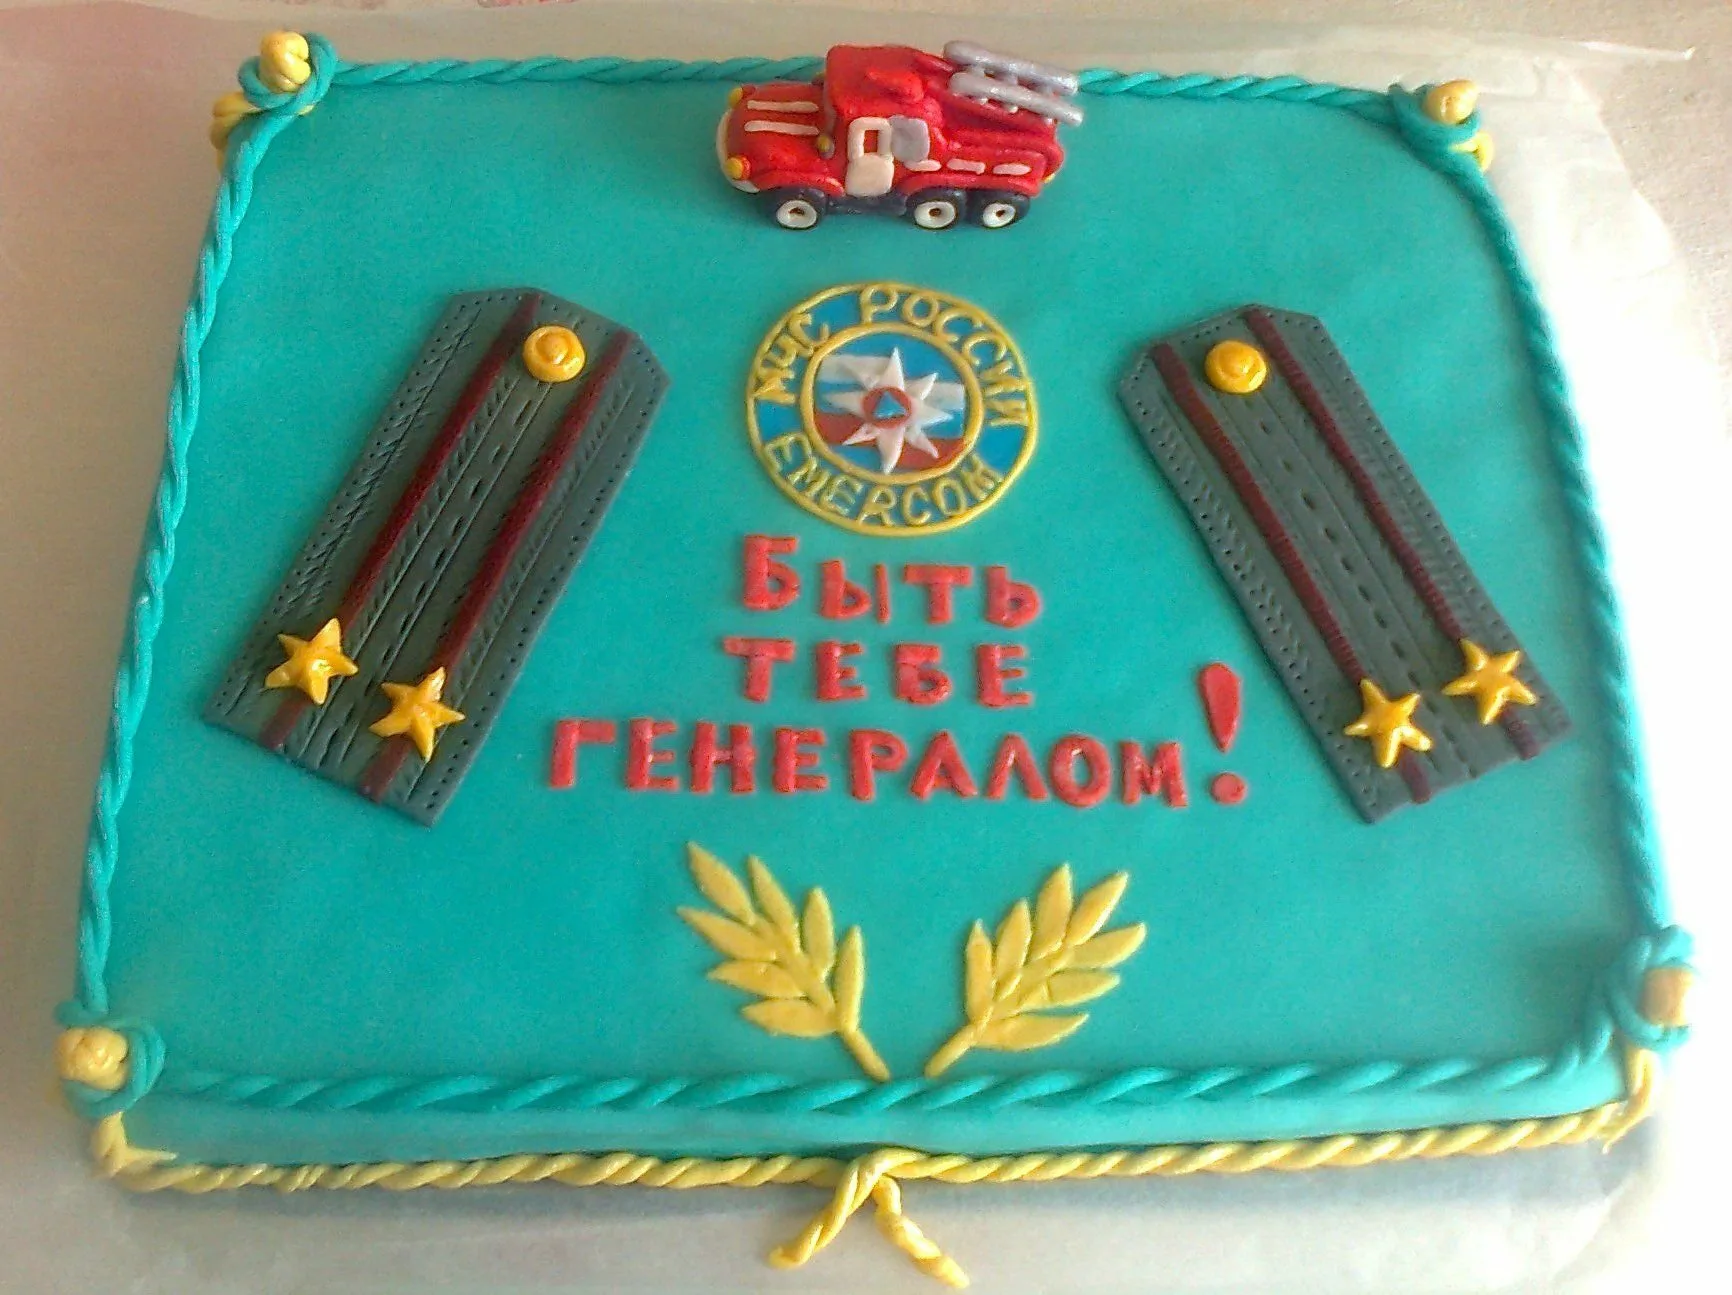 Фото Поздравление с днем рождения полицейскому по званиям Младшему сержанту, Сержанту, Старшему сержанту, Старшине #19